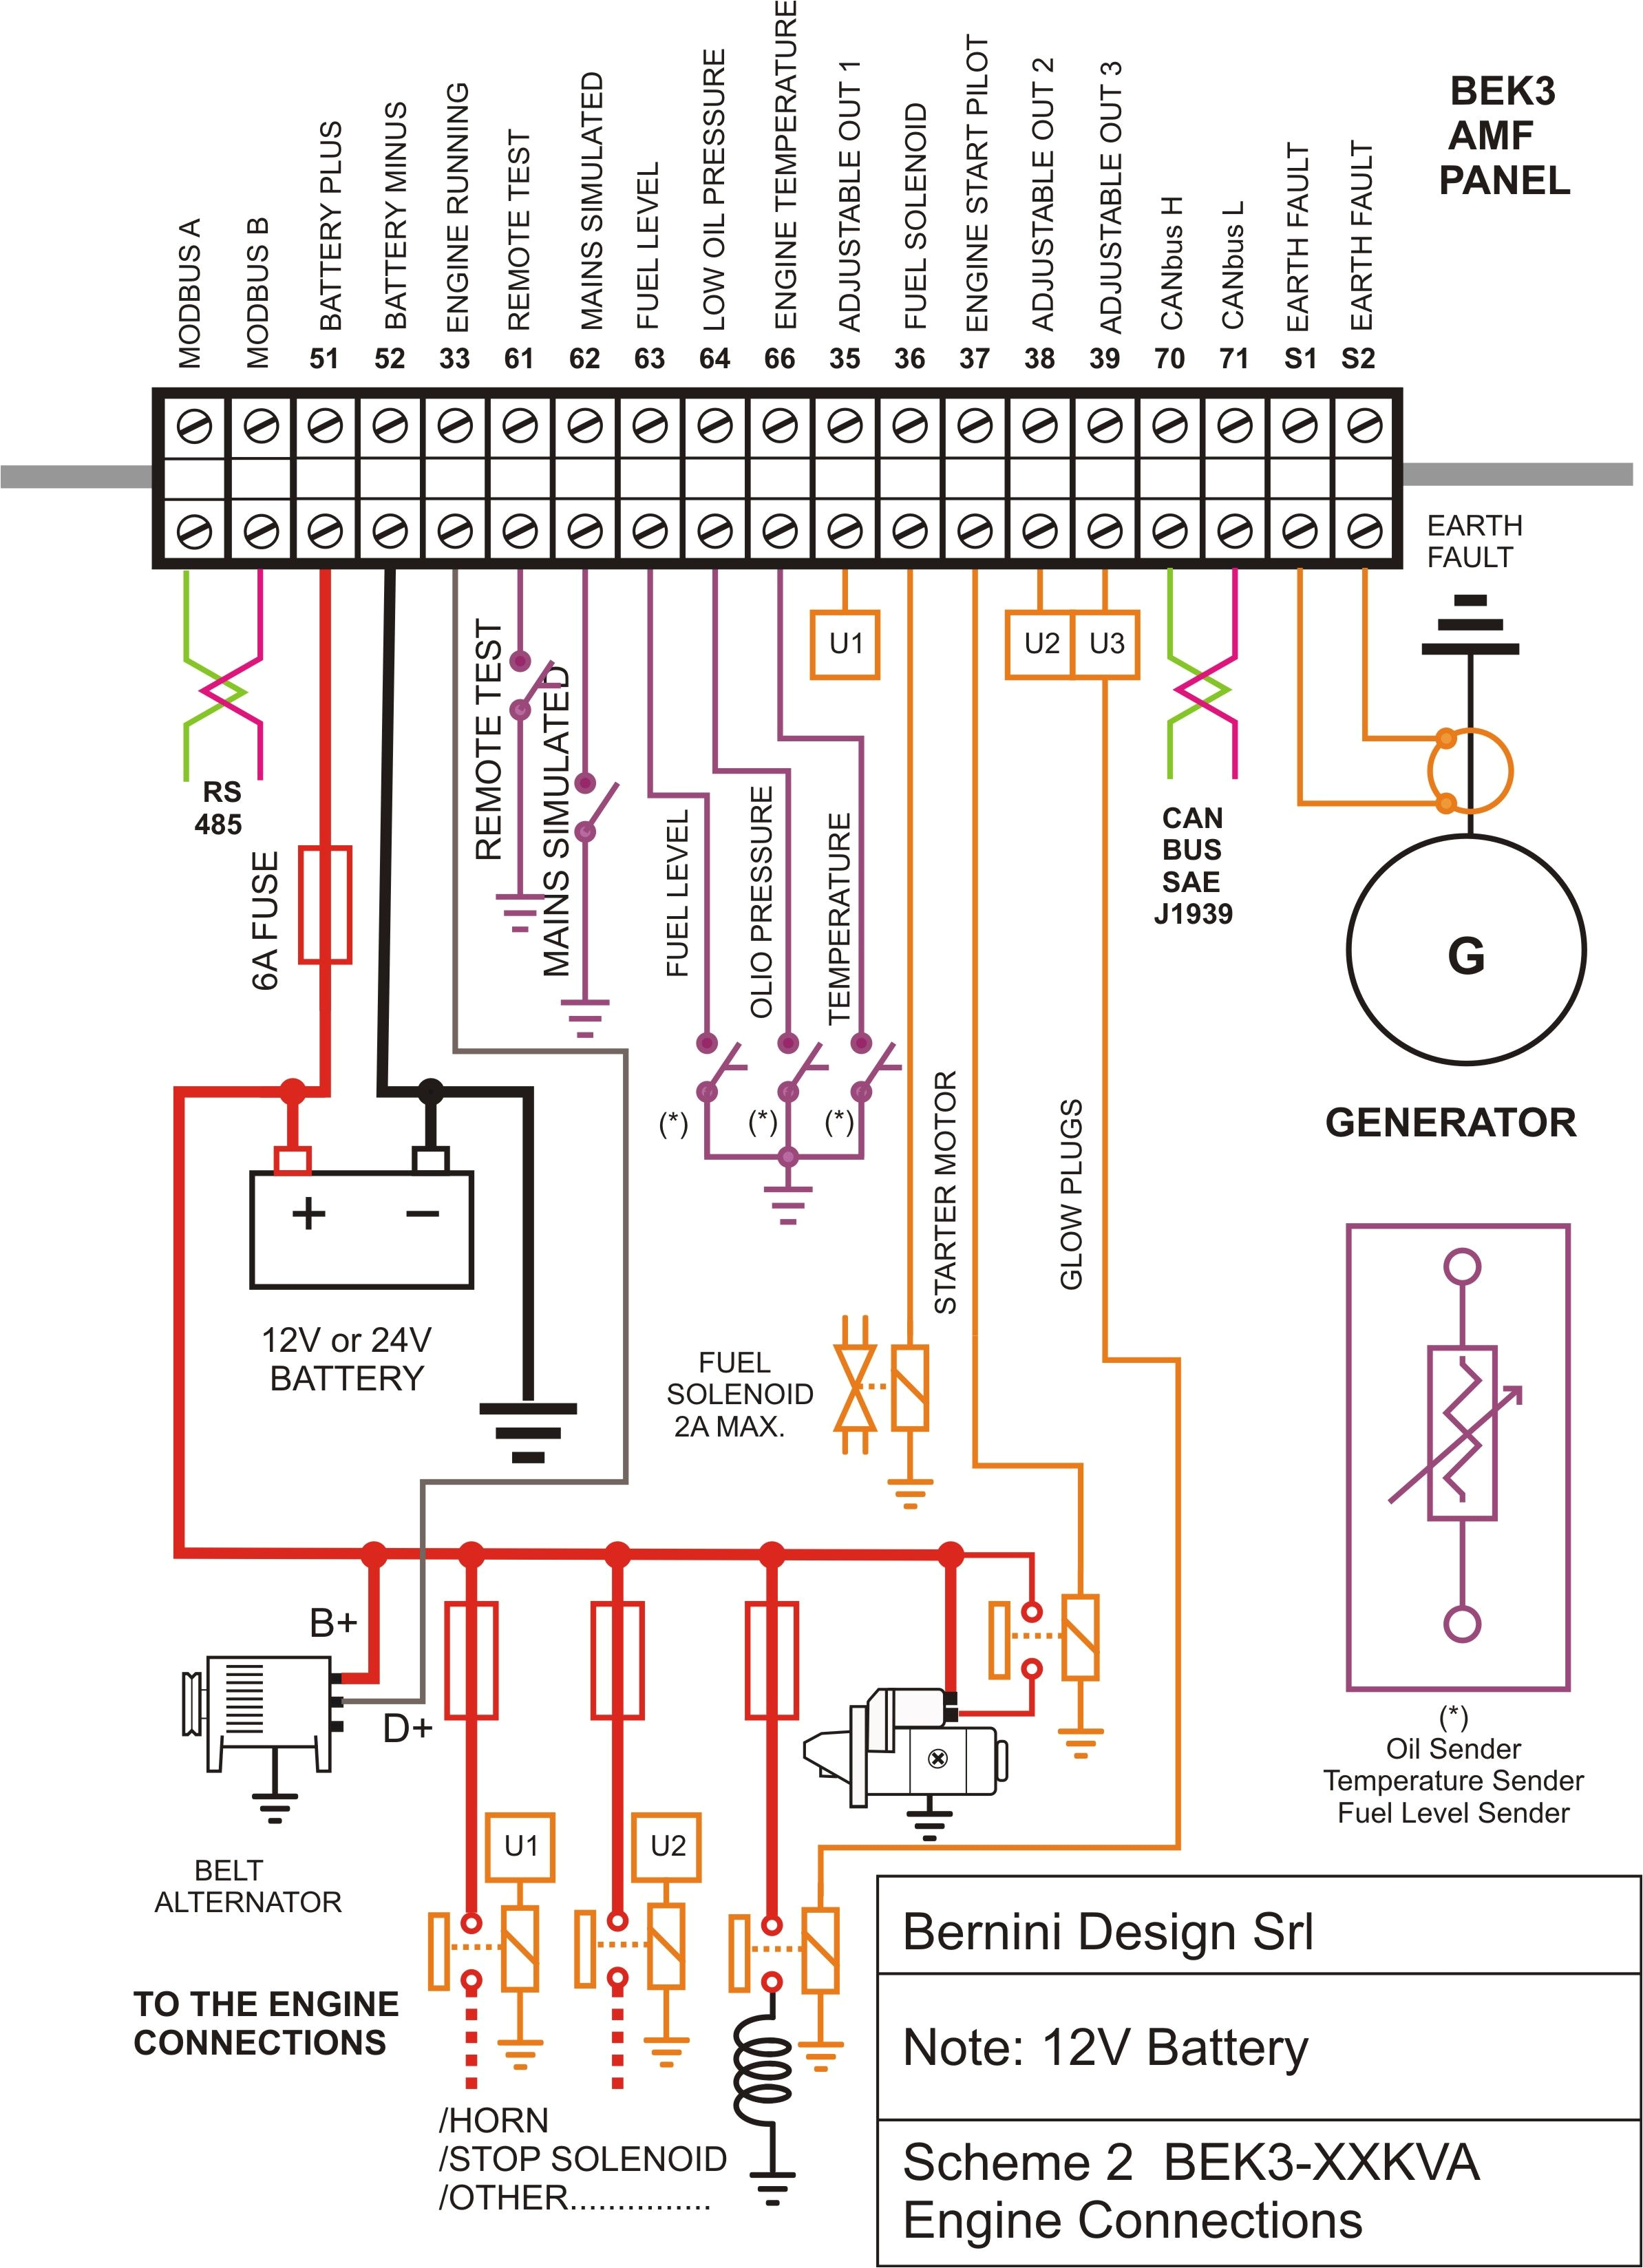 wiring panel diagram wiring diagram sort mix control box wiring diagram wiring diagram name wiring diagram